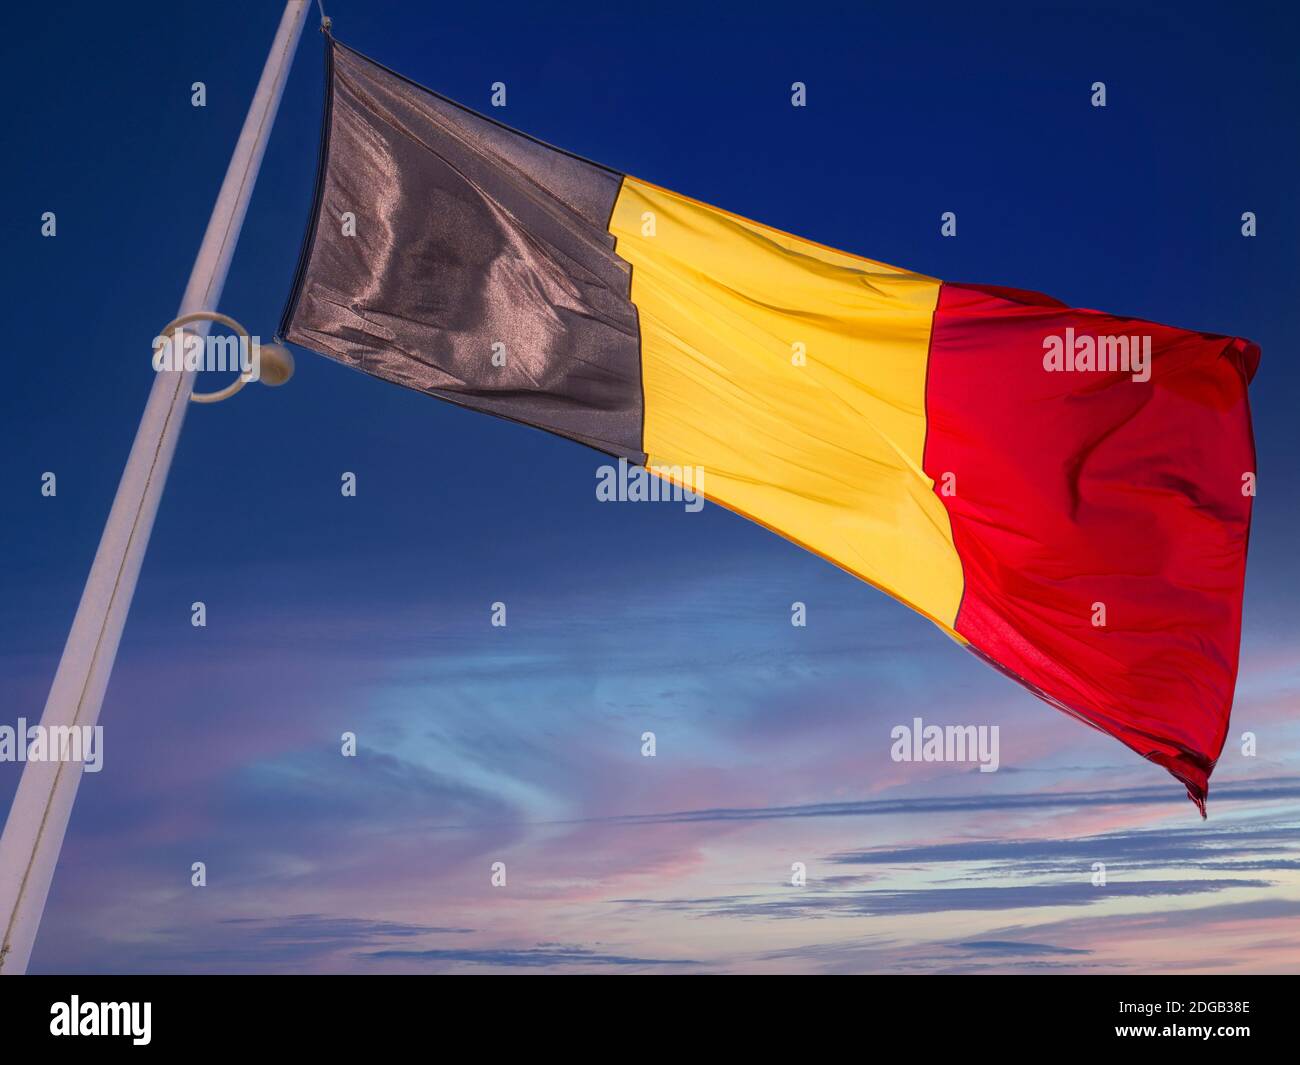 Belgische Flagge, die bei Sonnenuntergang fliegt, Belgische Nationalflagge Schwarz-Gelb-Rot, inspiriert von der französischen Trikolore, wurde 1831, kurz nach der Unabhängigkeit von den Niederlanden, übernommen. Stockfoto